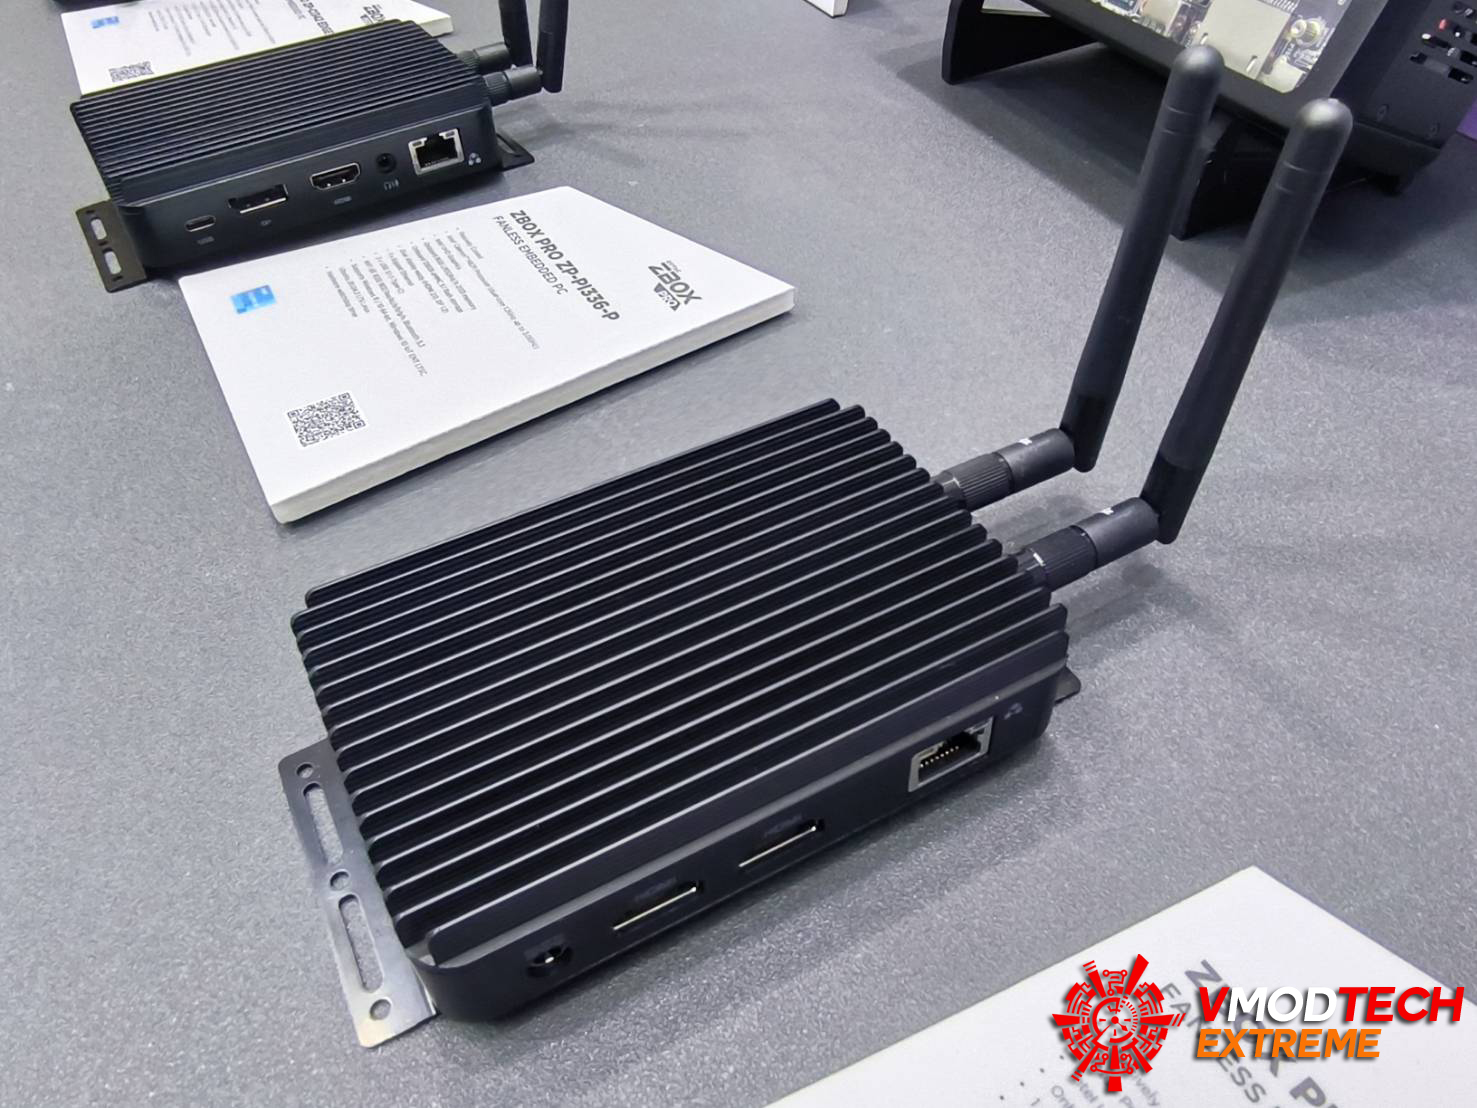 330499 Zotac@Computex2023 พาชมการ์ดจอรุ่นใหม่ ZOTAC X SPIDERMAN รุ่นพิเศษพร้อมทั้ง Mini PC ZBOX PICO ที่มาพร้อมระบบระบายความร้อนจาก AIRJET 